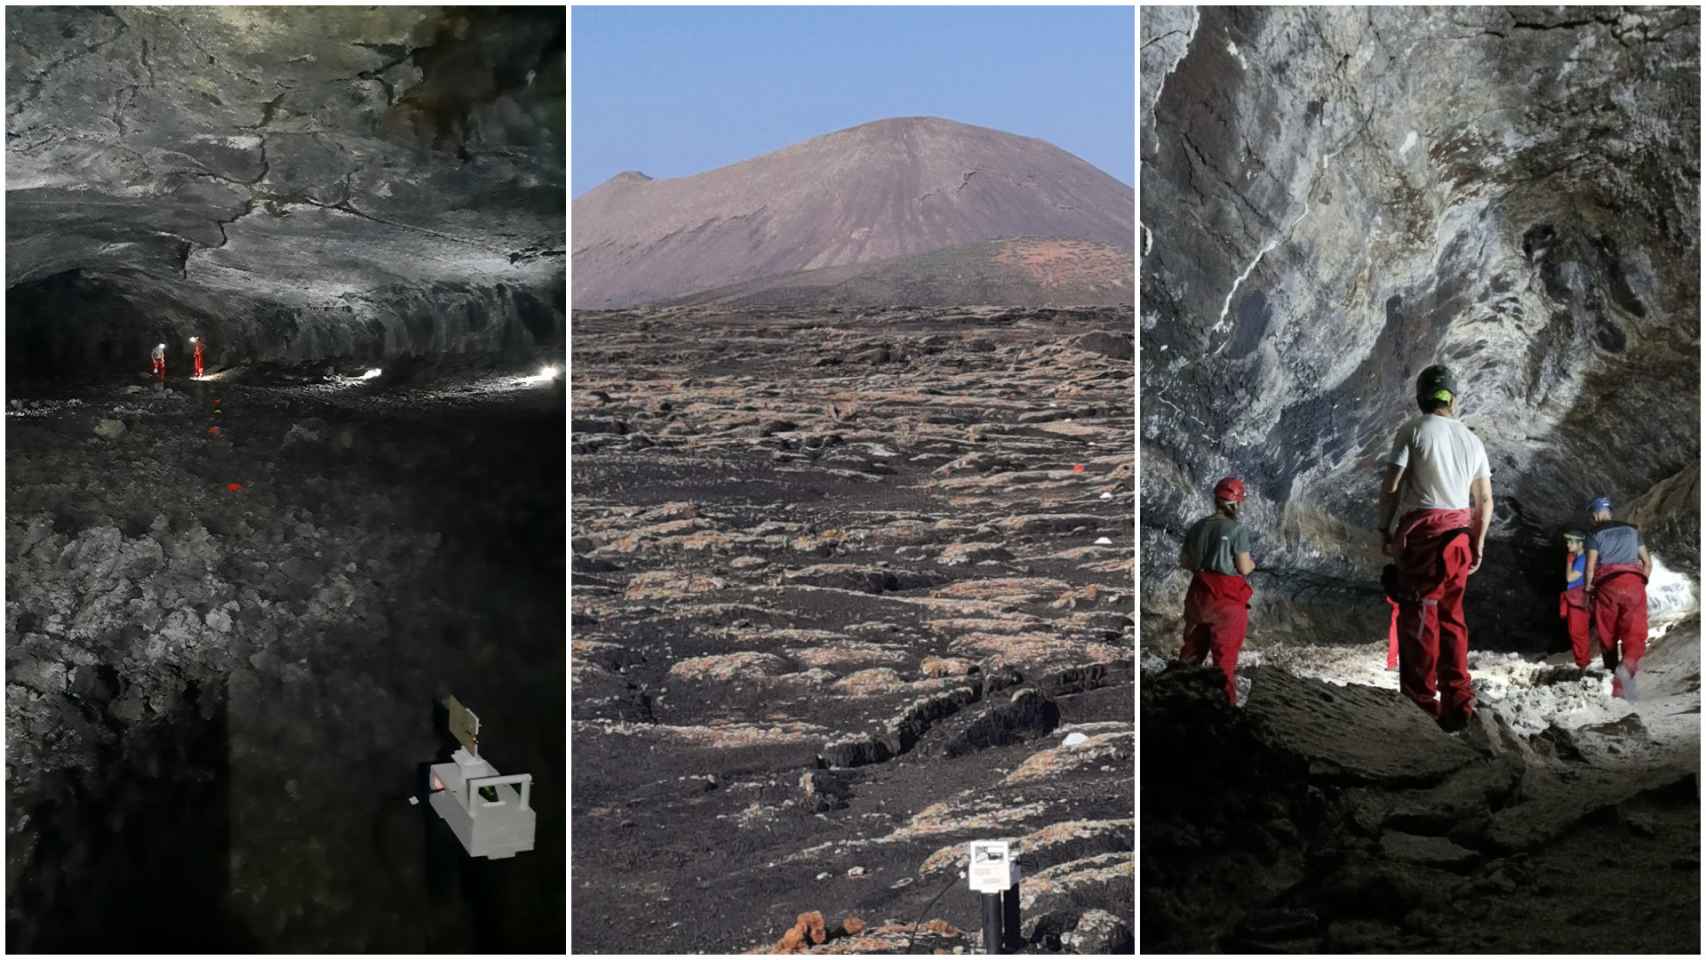 Imágenes de la expedición y de los exteriores de la cueva Los Naturalistas.